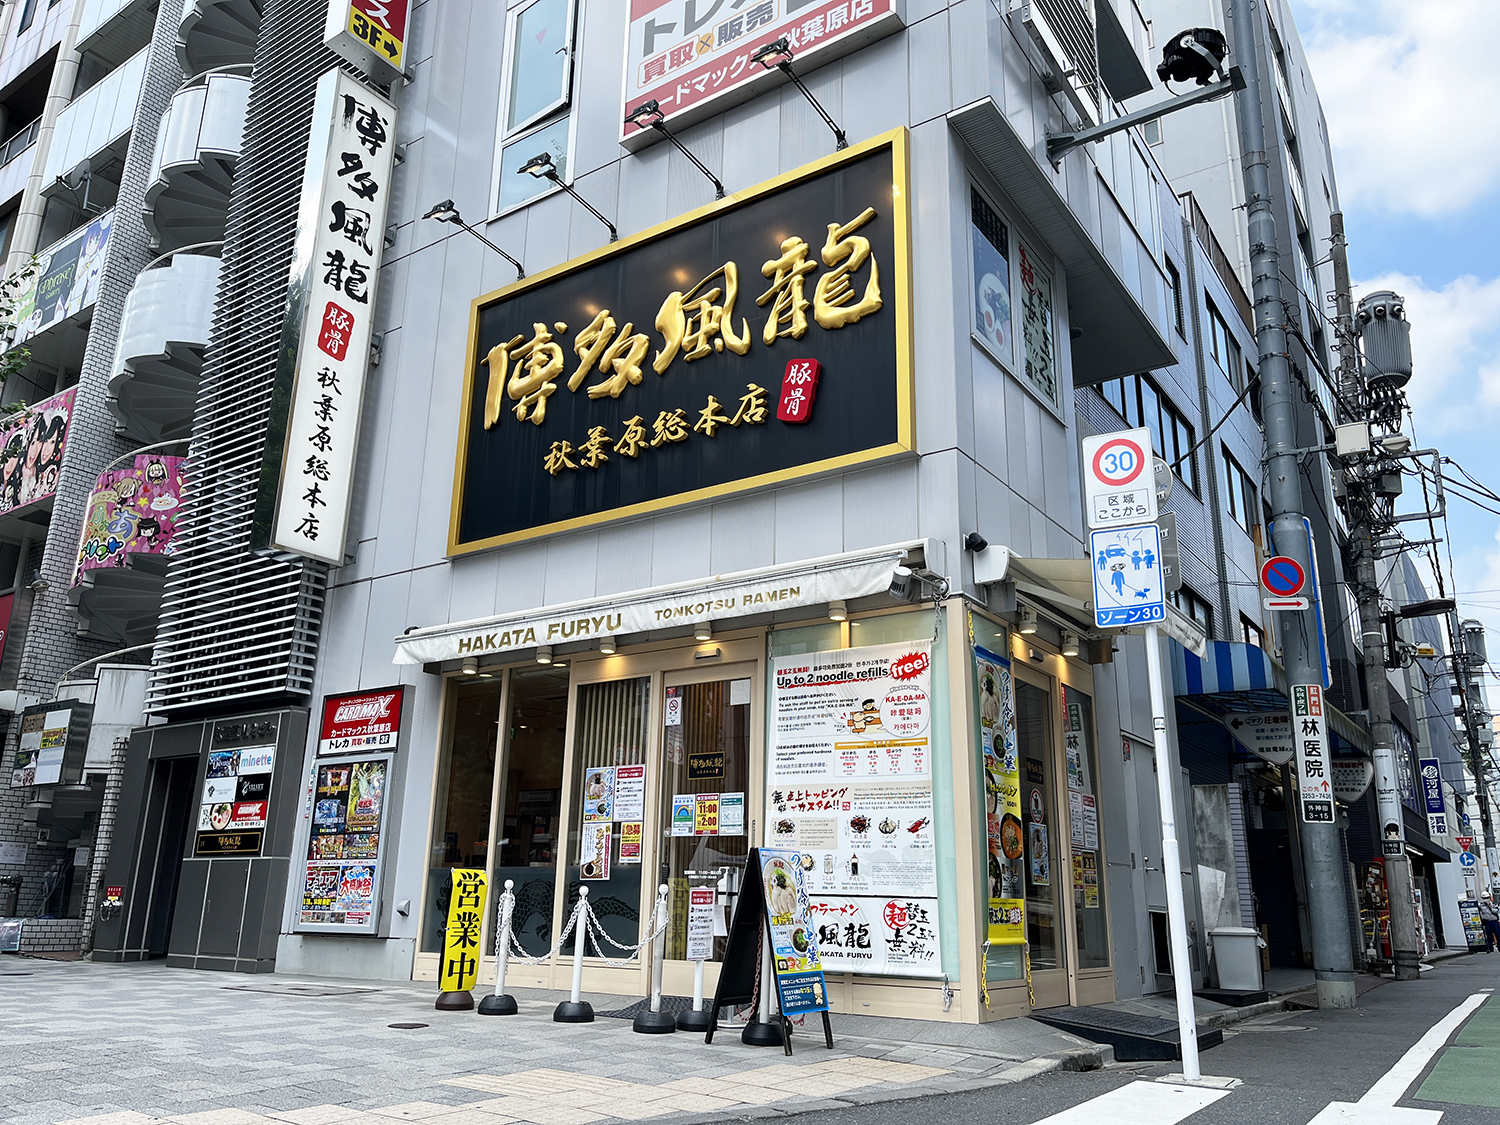 ビルの建て替えに伴い、2017年5月にリニューアルした秋葉原総本店。近くに2号店もある。